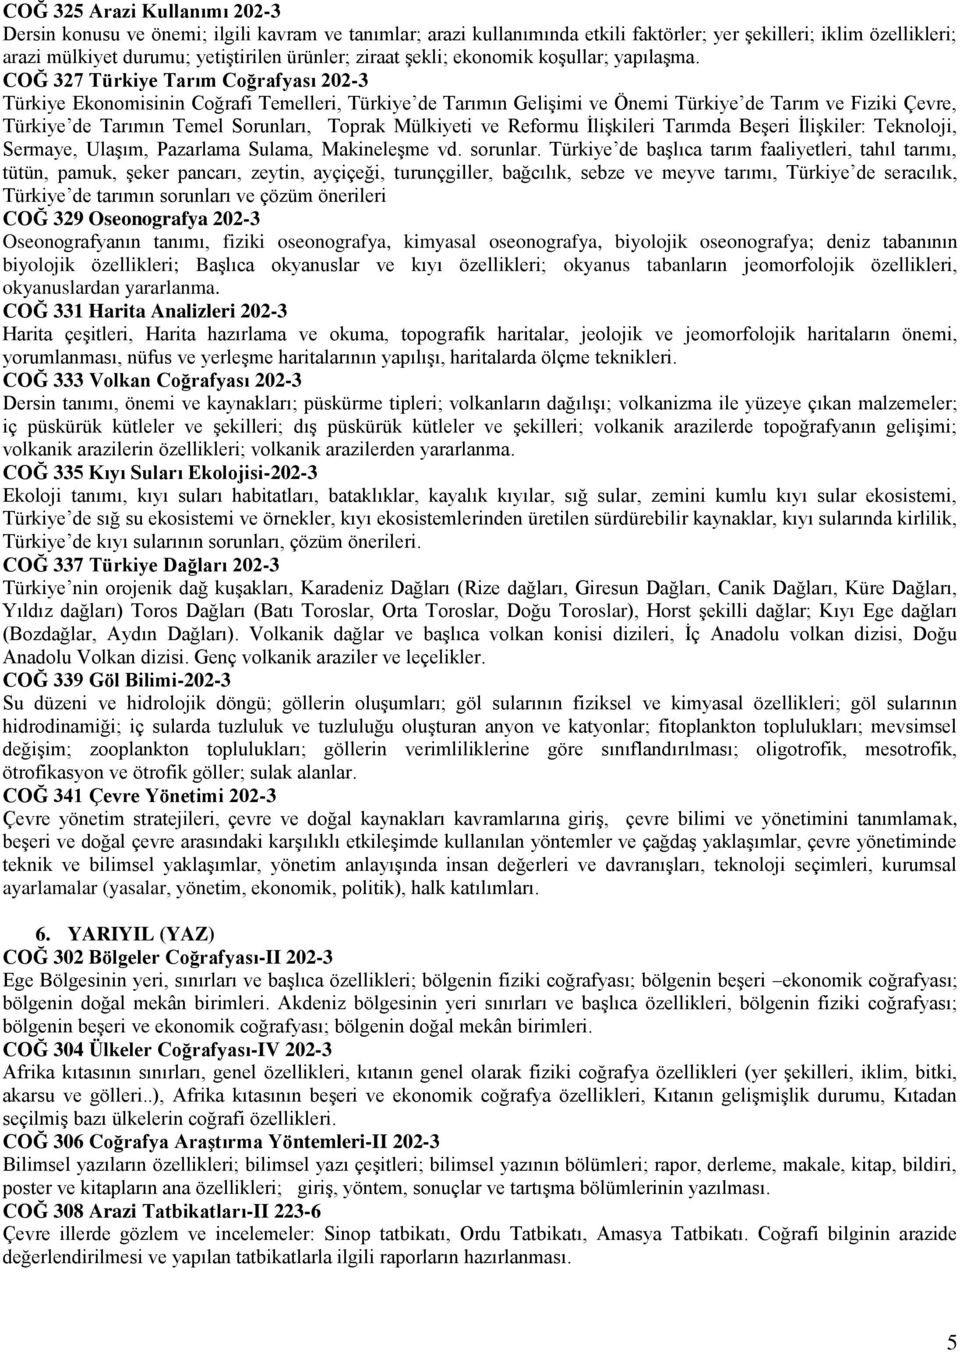 COĞ 327 Türkiye Tarım Coğrafyası 202-3 Türkiye Ekonomisinin Coğrafi Temelleri, Türkiye de Tarımın Gelişimi ve Önemi Türkiye de Tarım ve Fiziki Çevre, Türkiye de Tarımın Temel Sorunları, Toprak